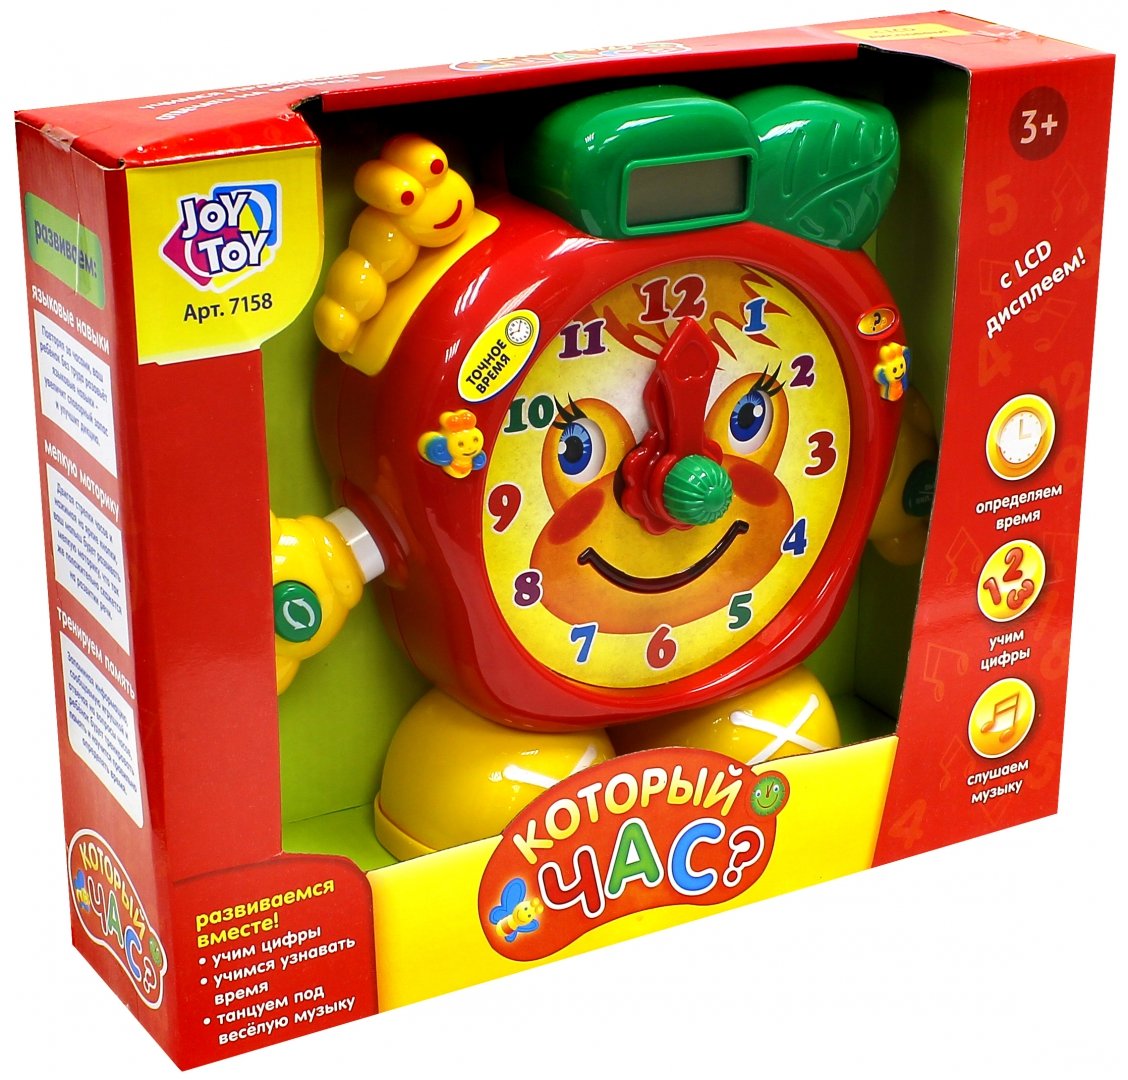 Иллюстрация 1 из 3 для Часы "Который час?" обучающие (со светом и звуком) (7158) | Лабиринт - игрушки. Источник: Лабиринт